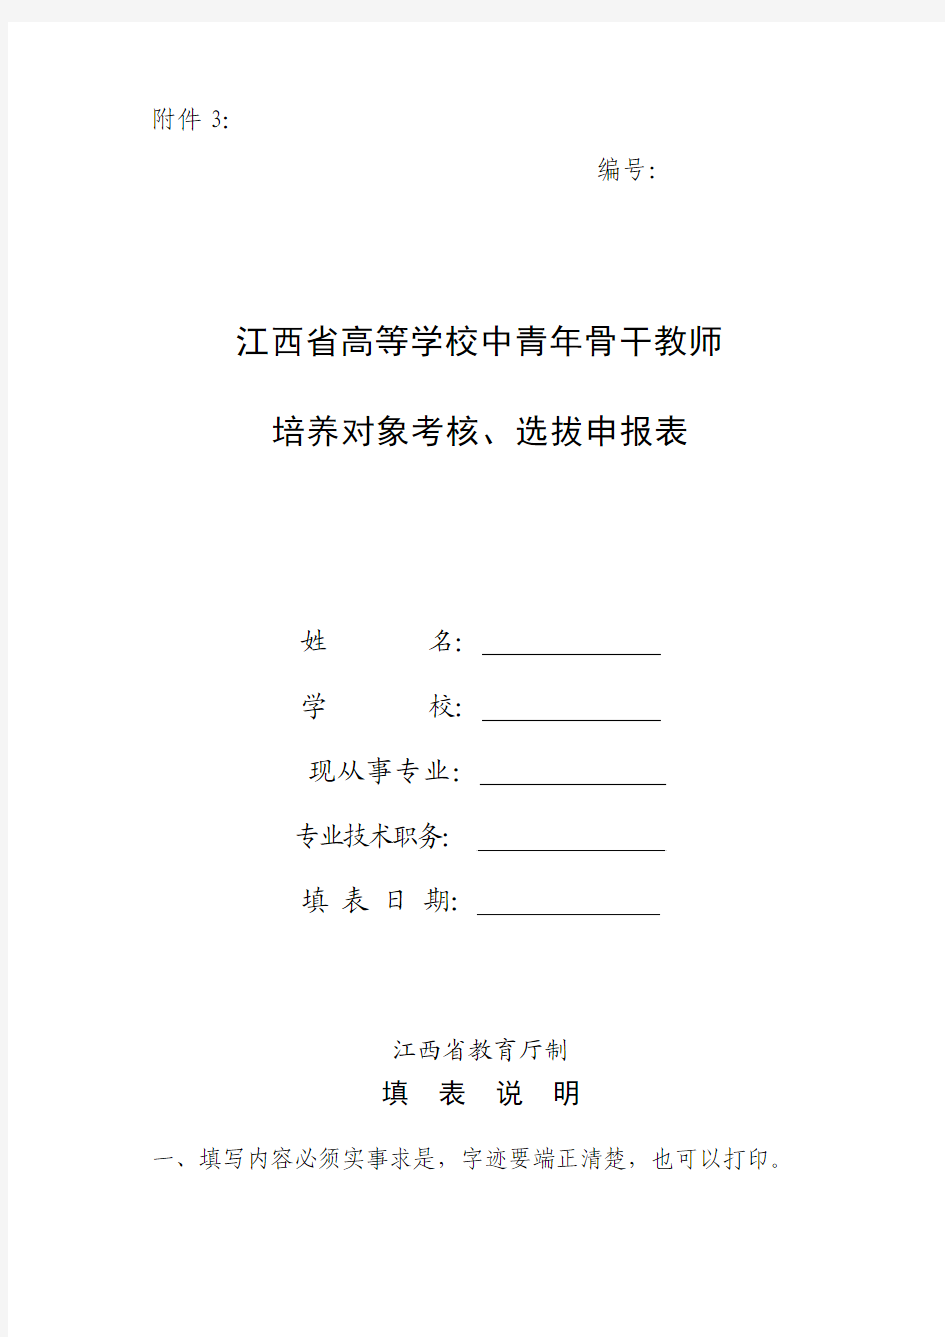 江西省高等学校中青年骨干教师培养对象考核,选拔申报表